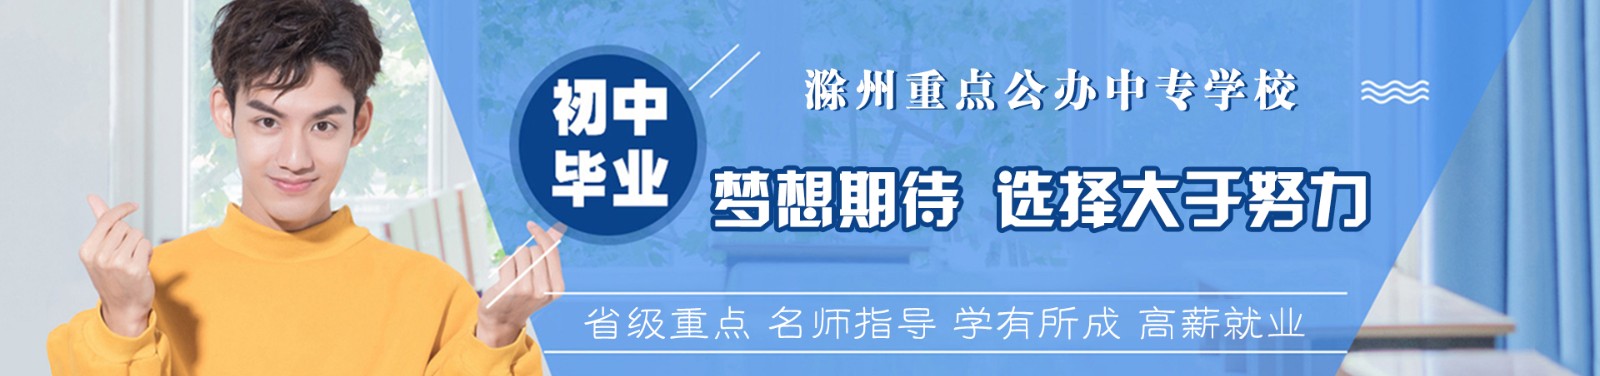 安徽省广播电视大学滁州市分校公司介绍